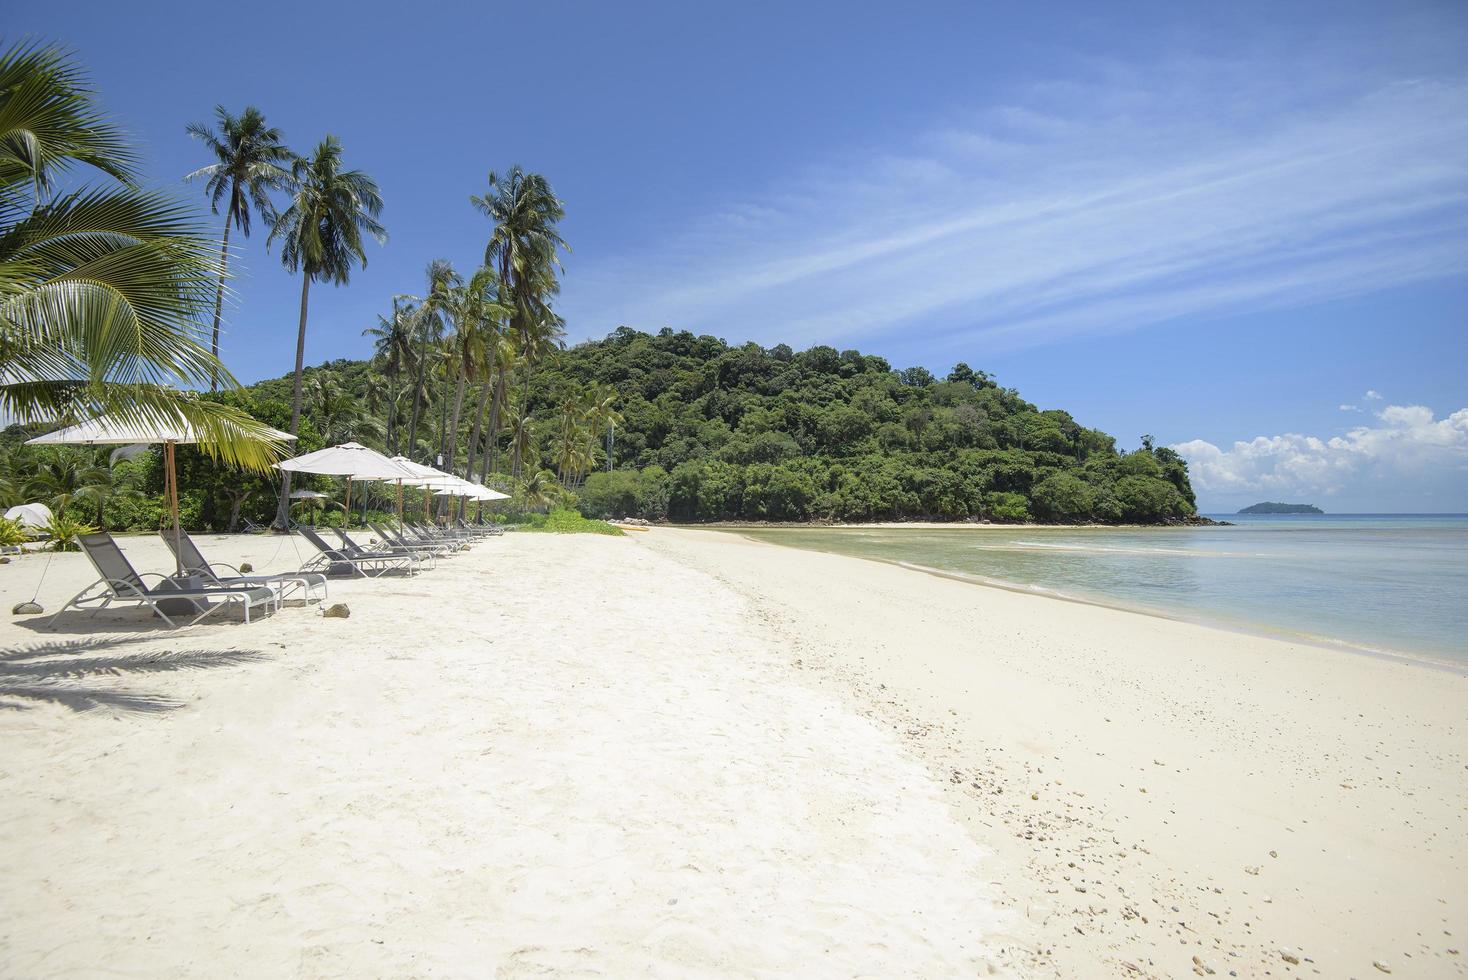 schöne Aussichtslandschaft mit Liegestühlen am tropischen Strand, dem smaragdgrünen Meer und weißem Sand gegen den blauen Himmel, Maya Bay auf der Insel Phi Phi, Thailand? foto